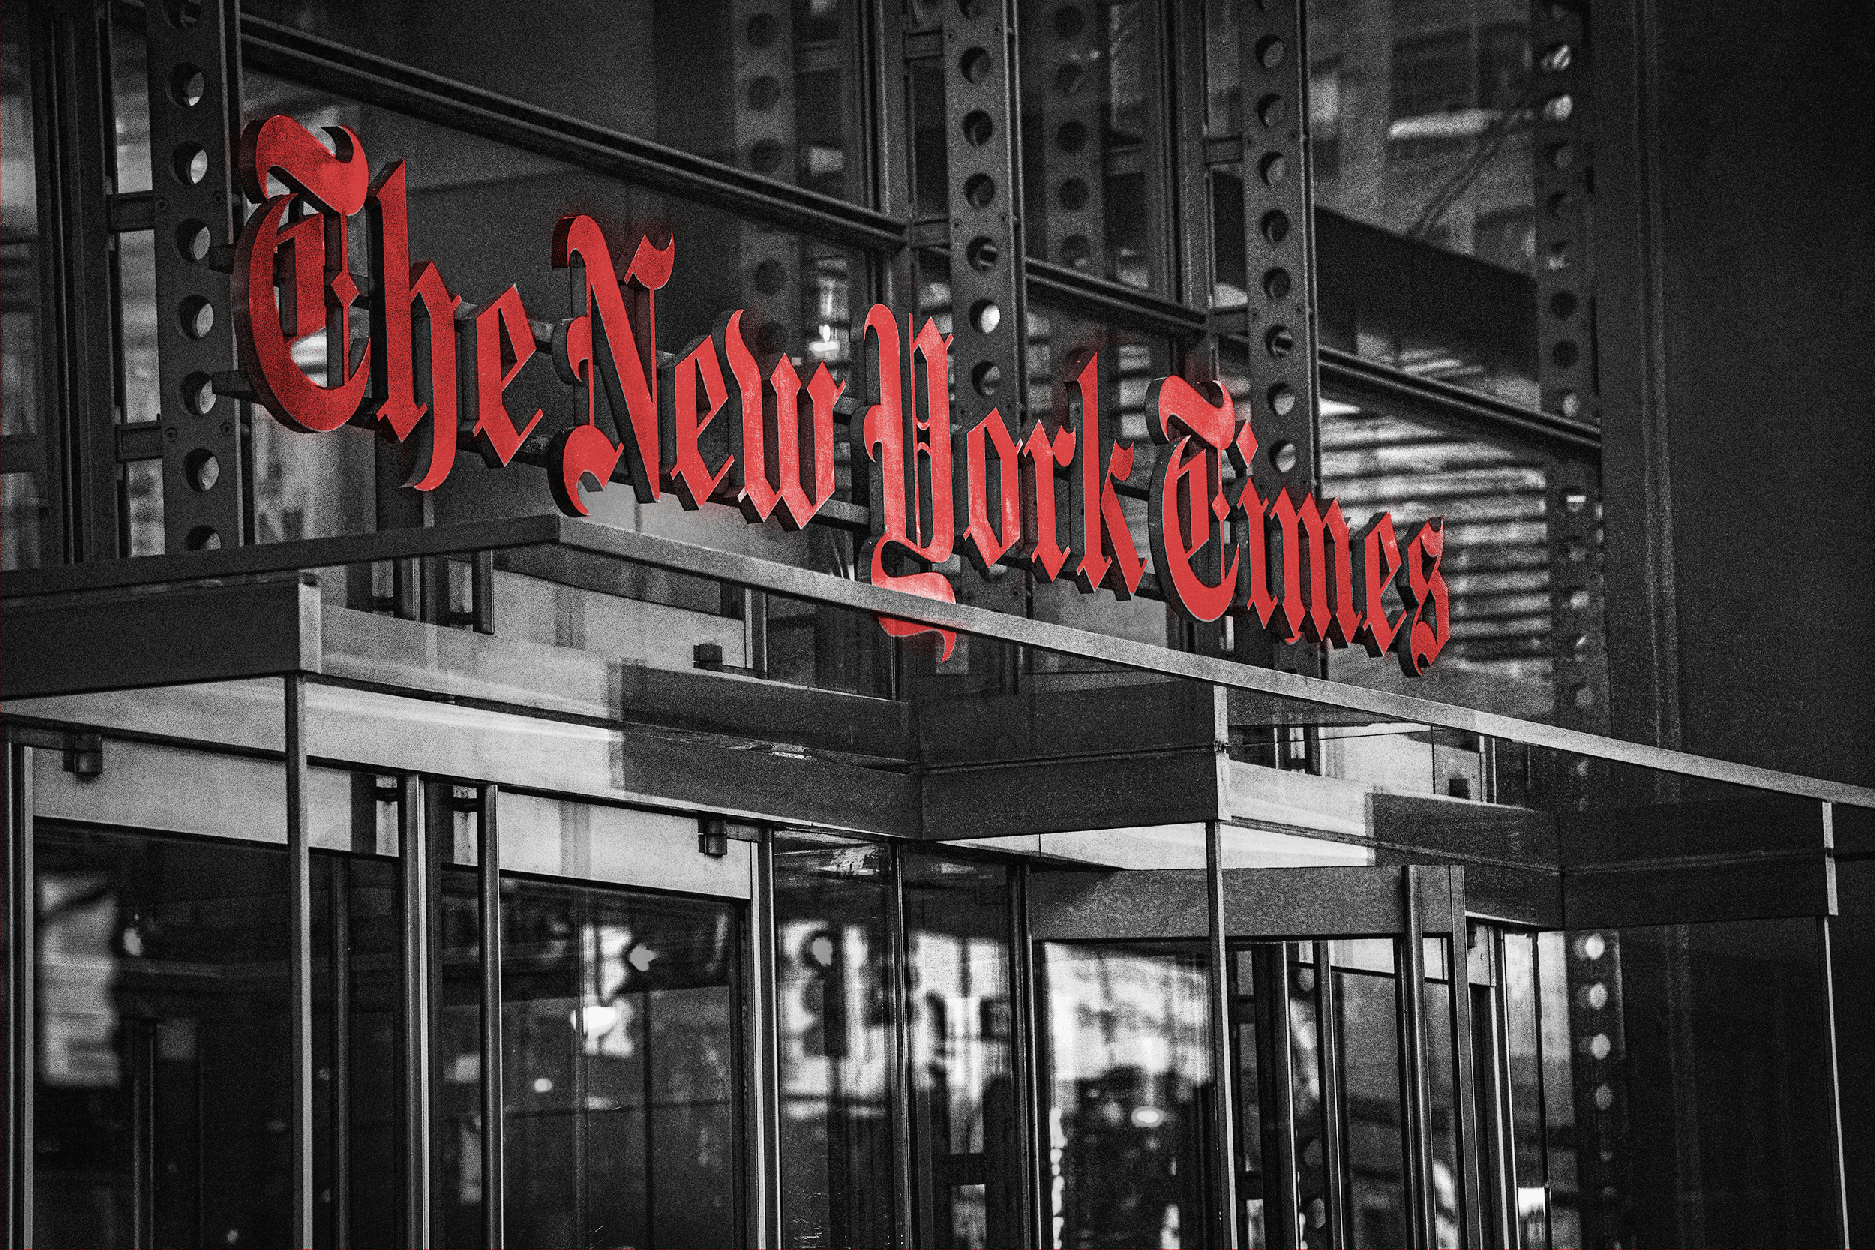 Sau nhiều năm xoa dịu ĐCSTQ, giờ đây New York Times đang trù tính tấn công Shen Yun